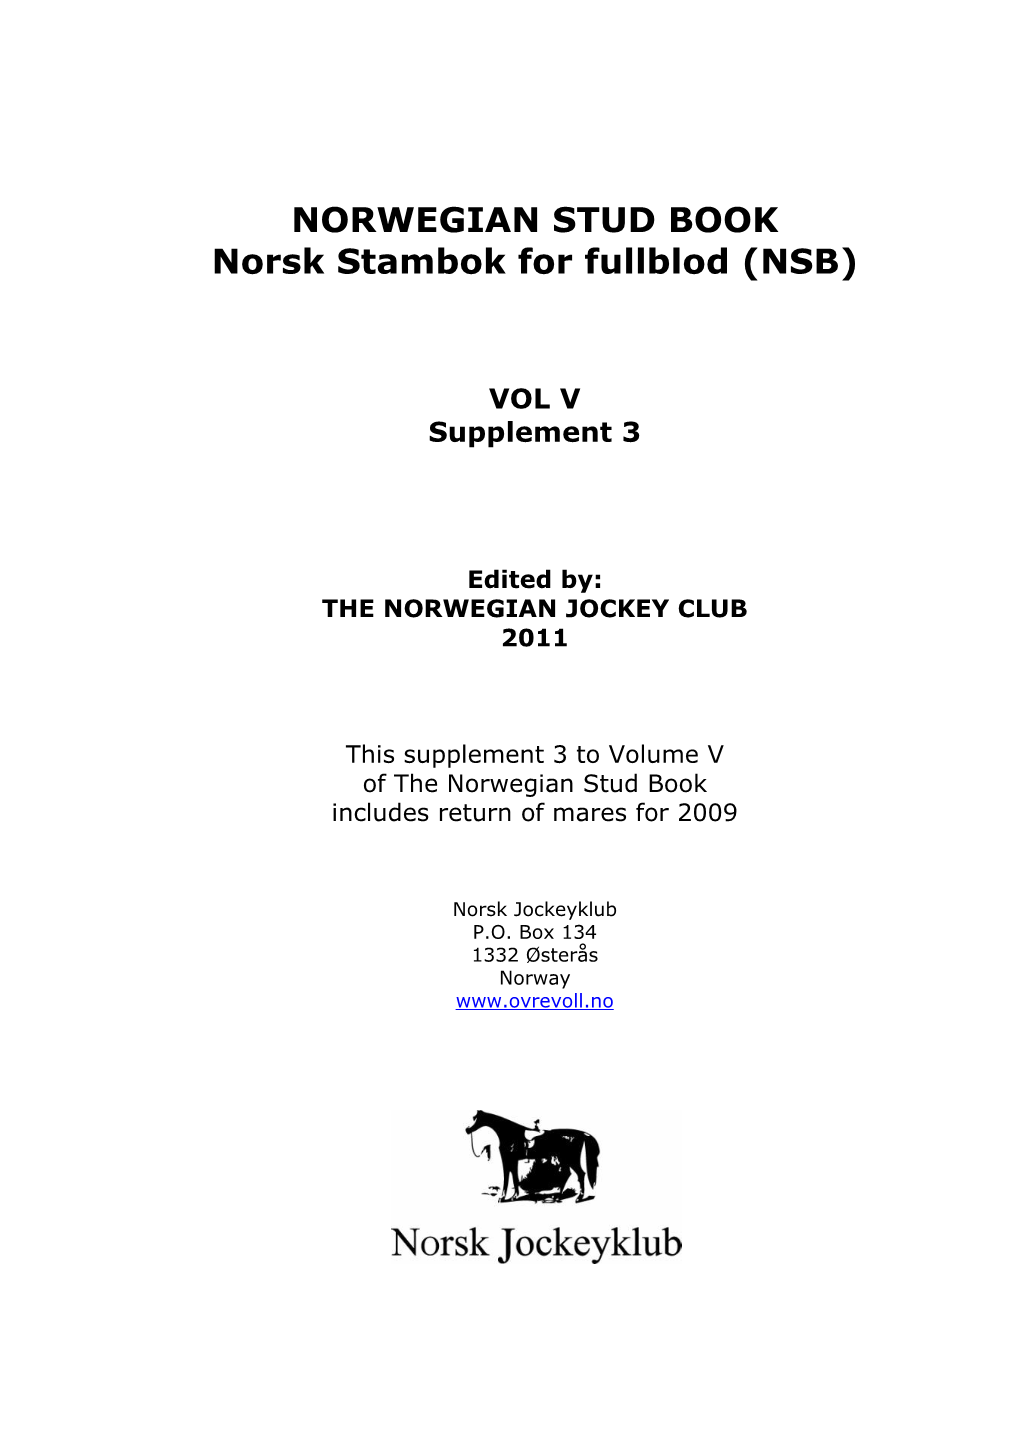 NORWEGIAN STUD BOOK Norsk Stambok for Fullblod (NSB)